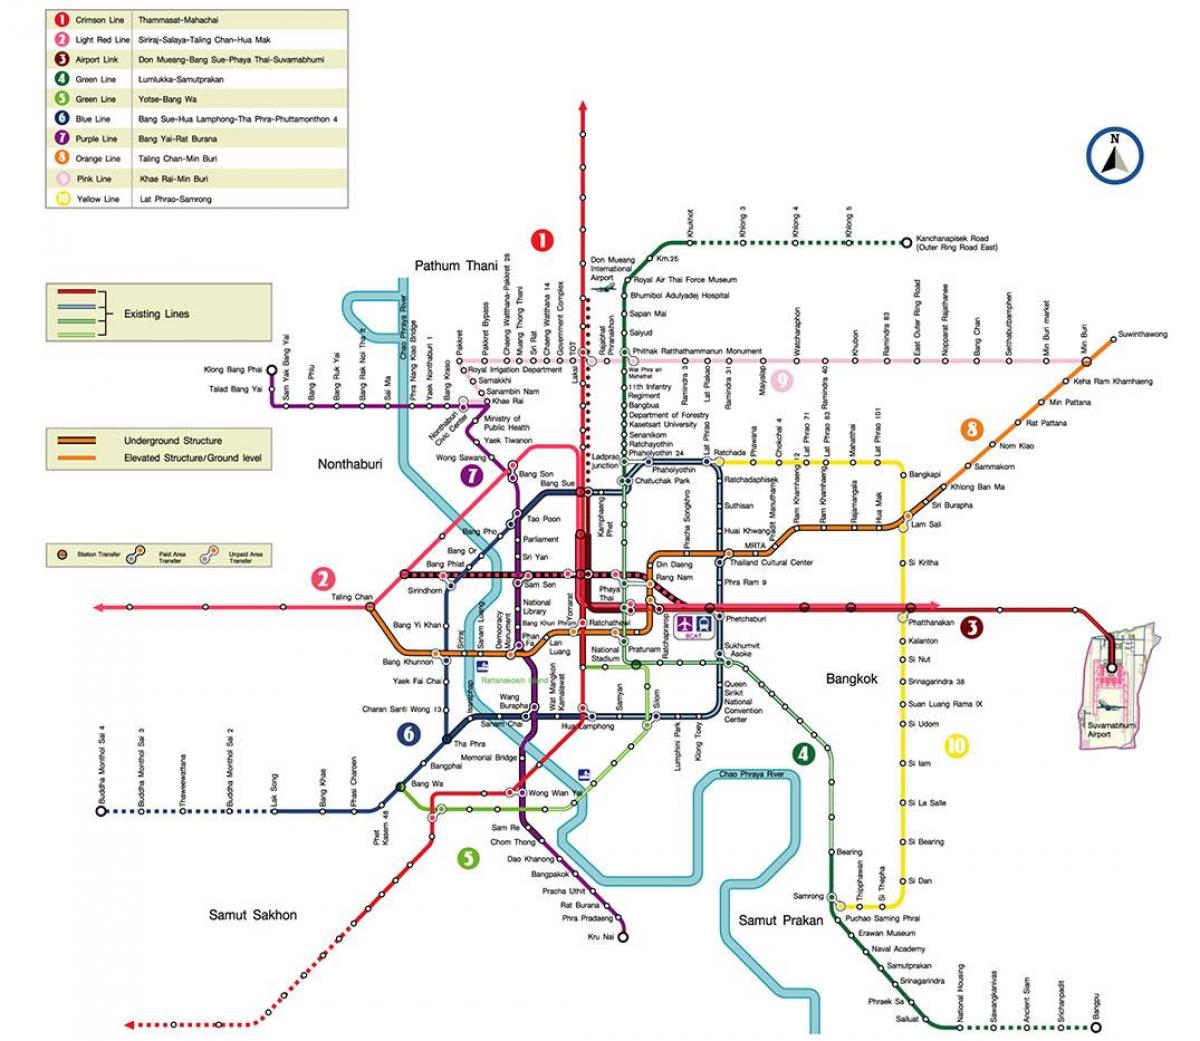 бангкок метроны станц зураг